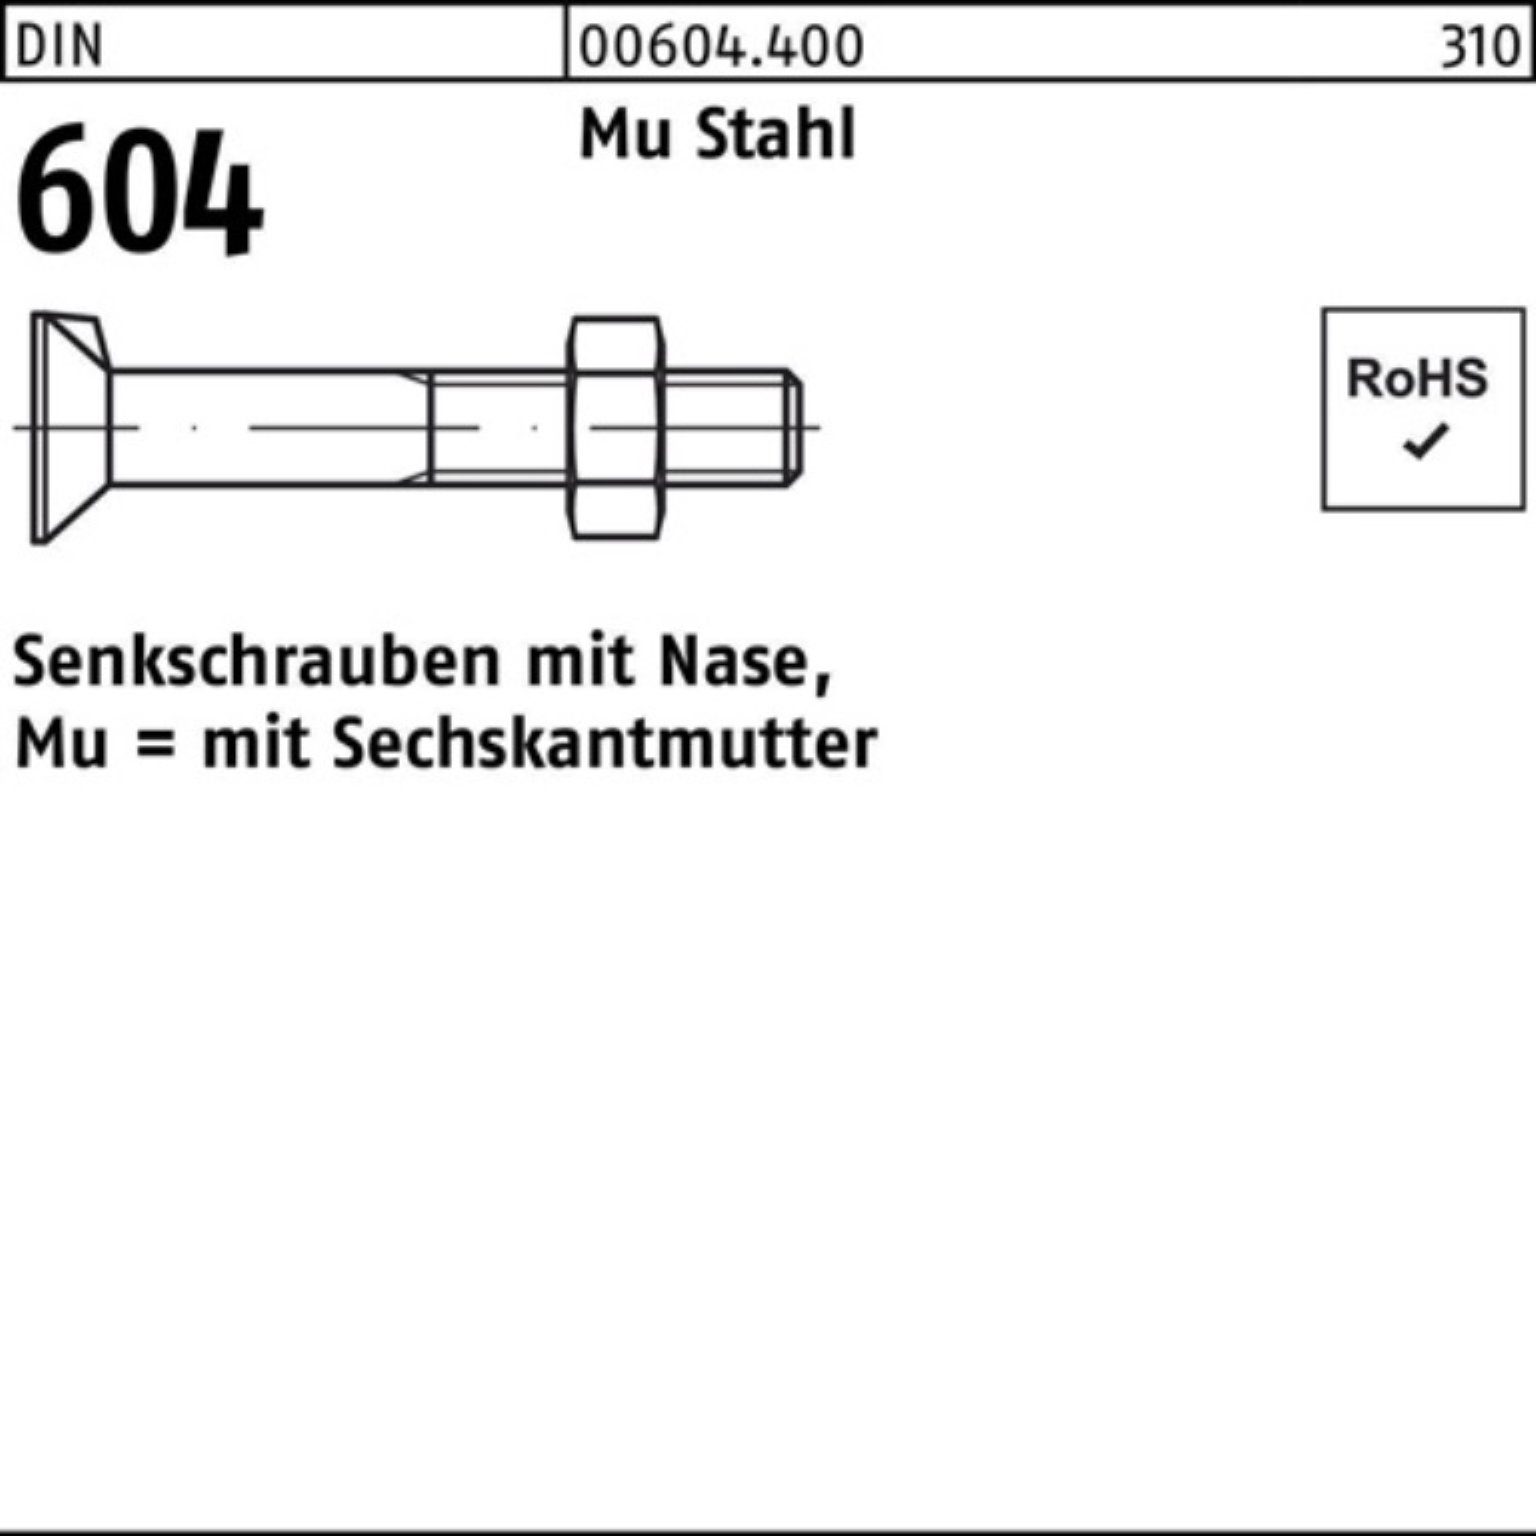 Reyher Senkschraube 100er Pack Senkschraube DIN 604 Nase/6-ktmutter M16x 140 Mu Stahl 4.6